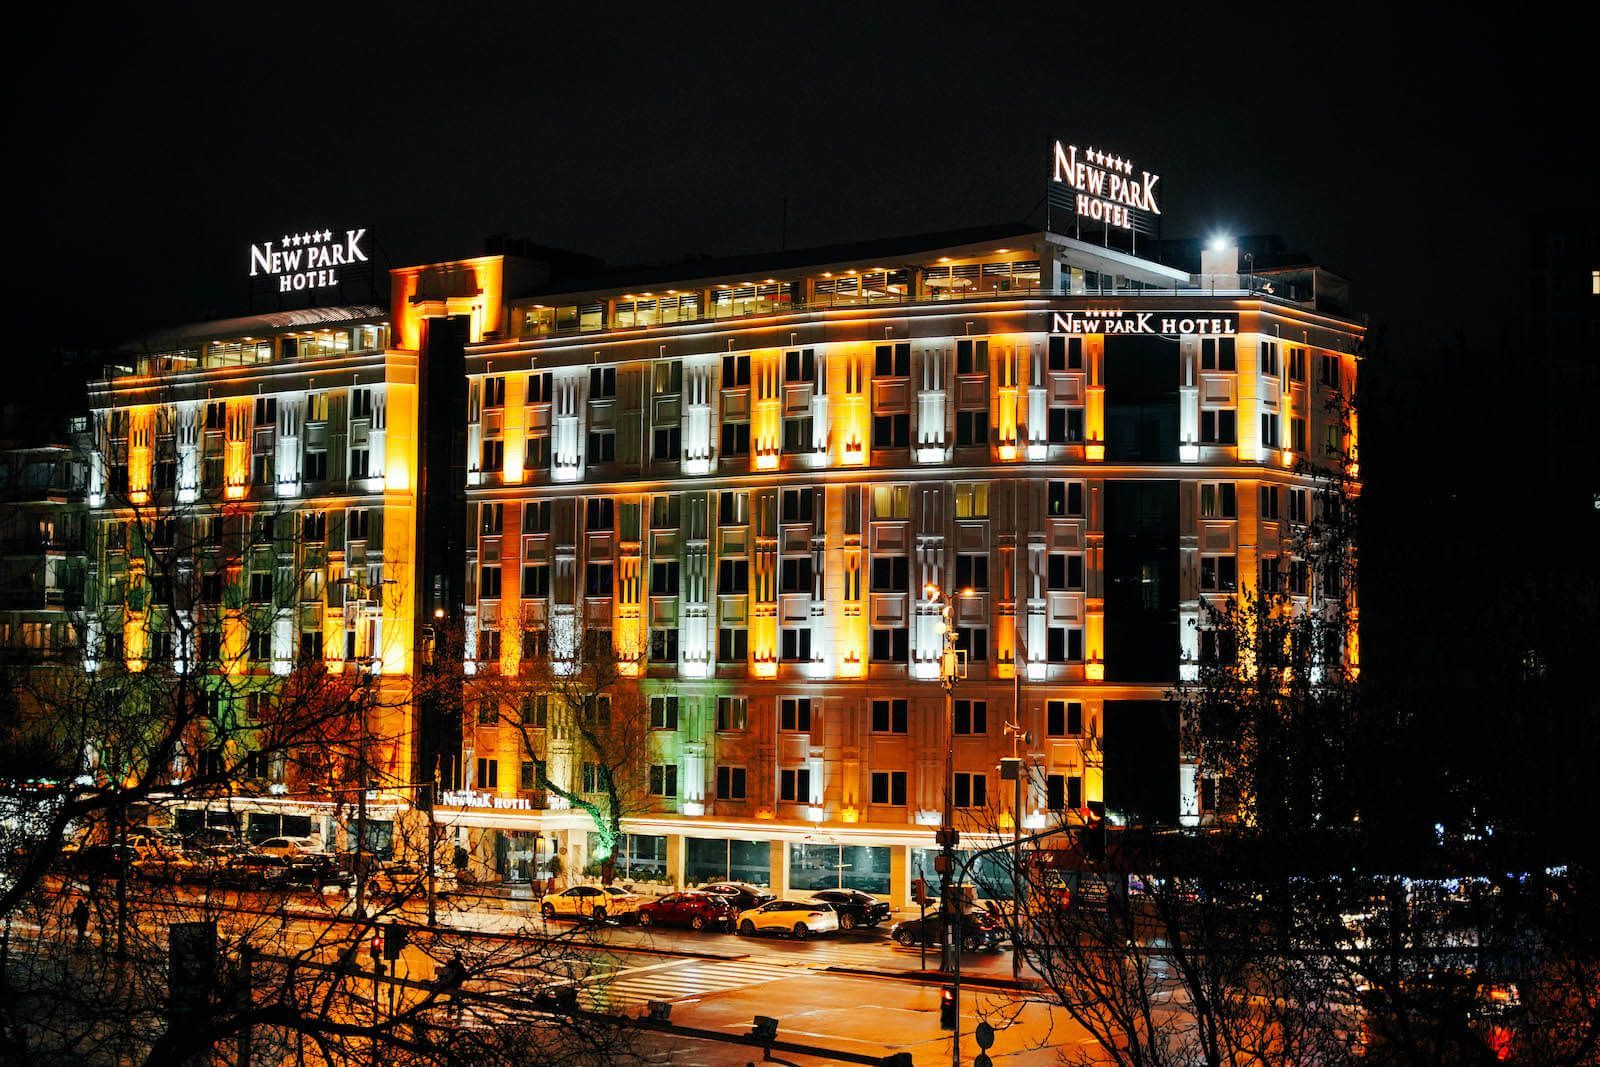 New Park Ankara Hotel